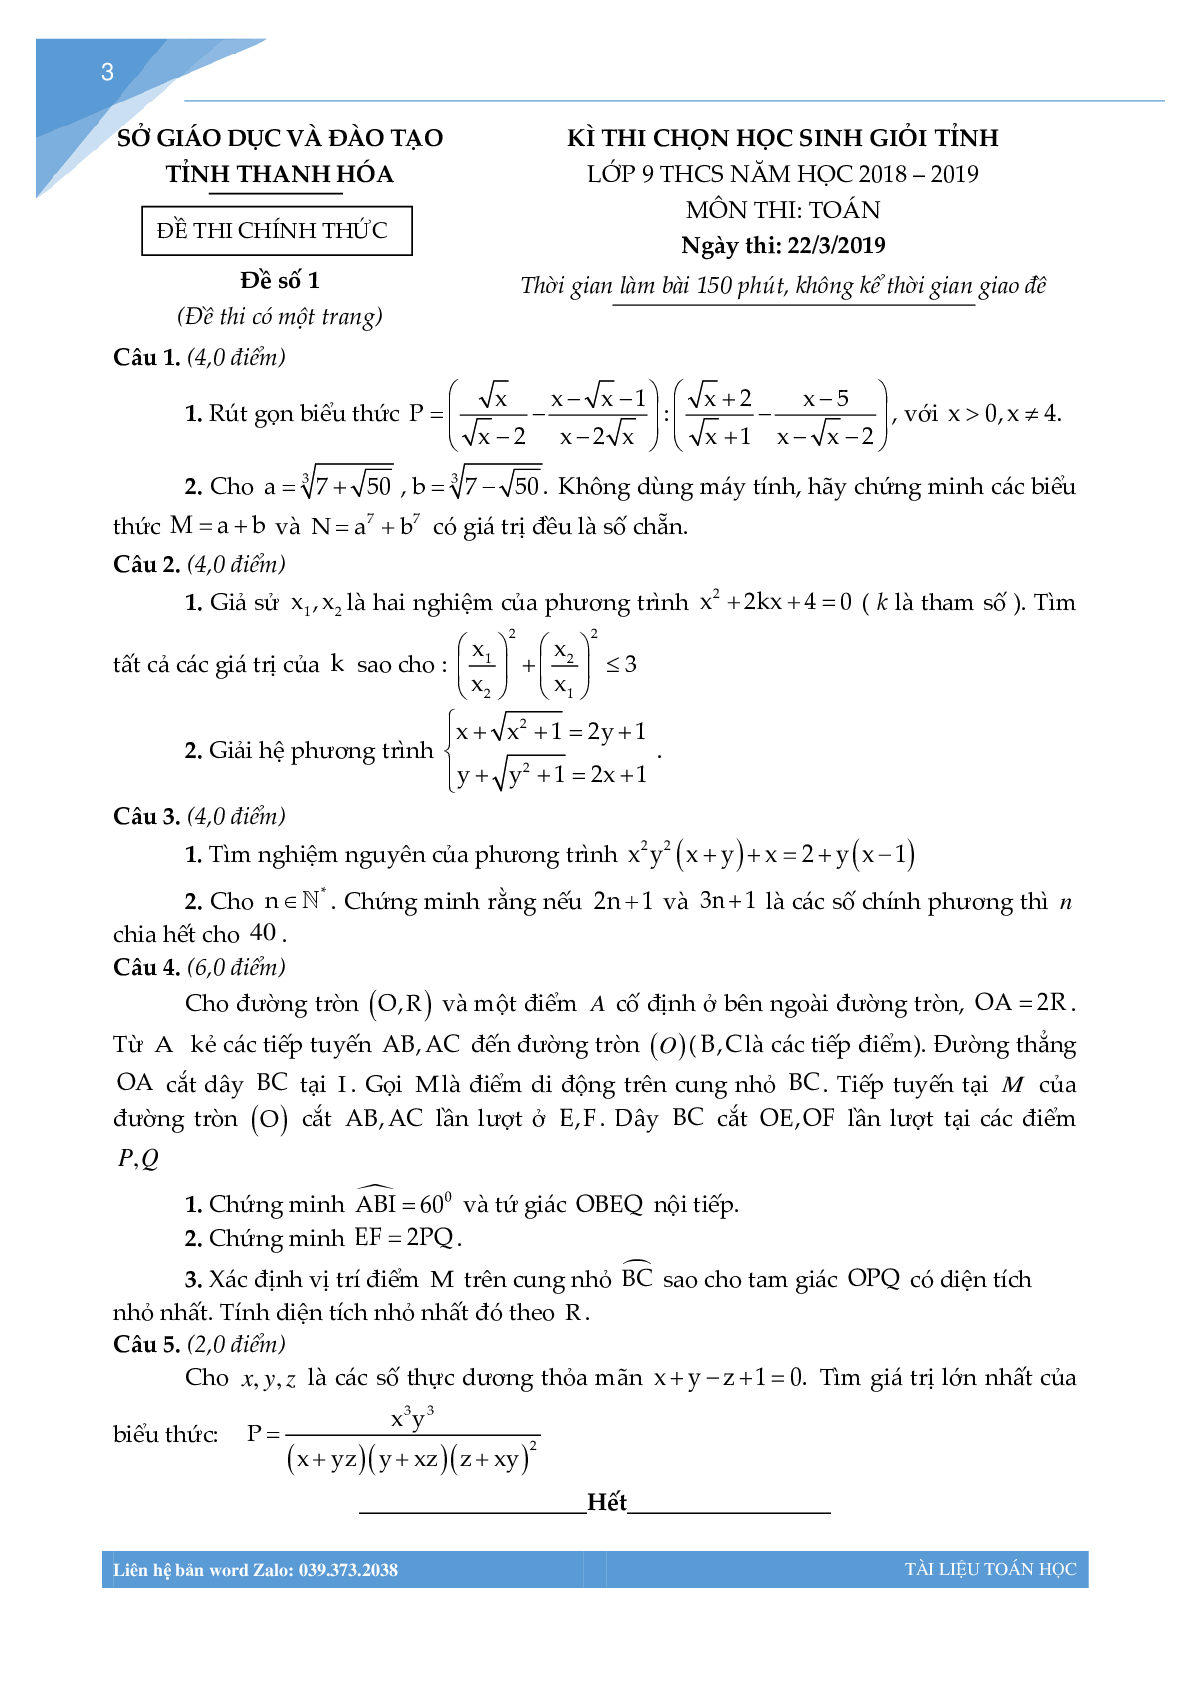 Bộ đề học sinh giỏi môn toán lớp 9 tỉnh Thanh Hóa (trang 2)